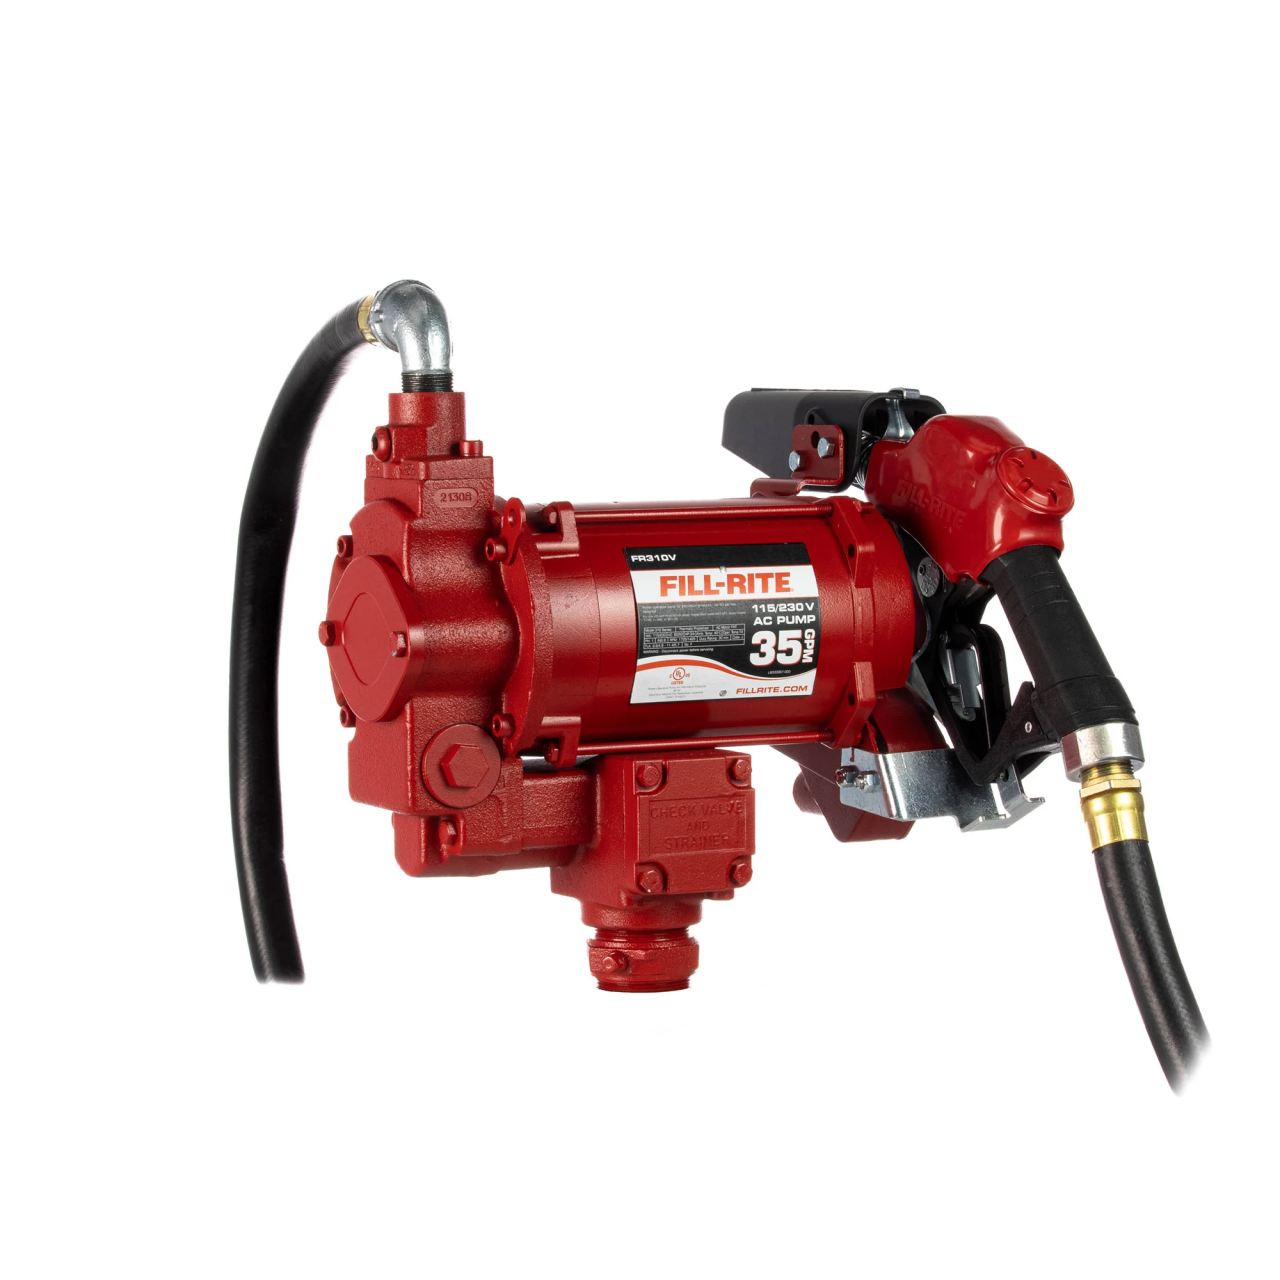 Fill-Rite FR310VB 115/230V AC Hi-Flow Transfer Pump w/ Auto Nozzle